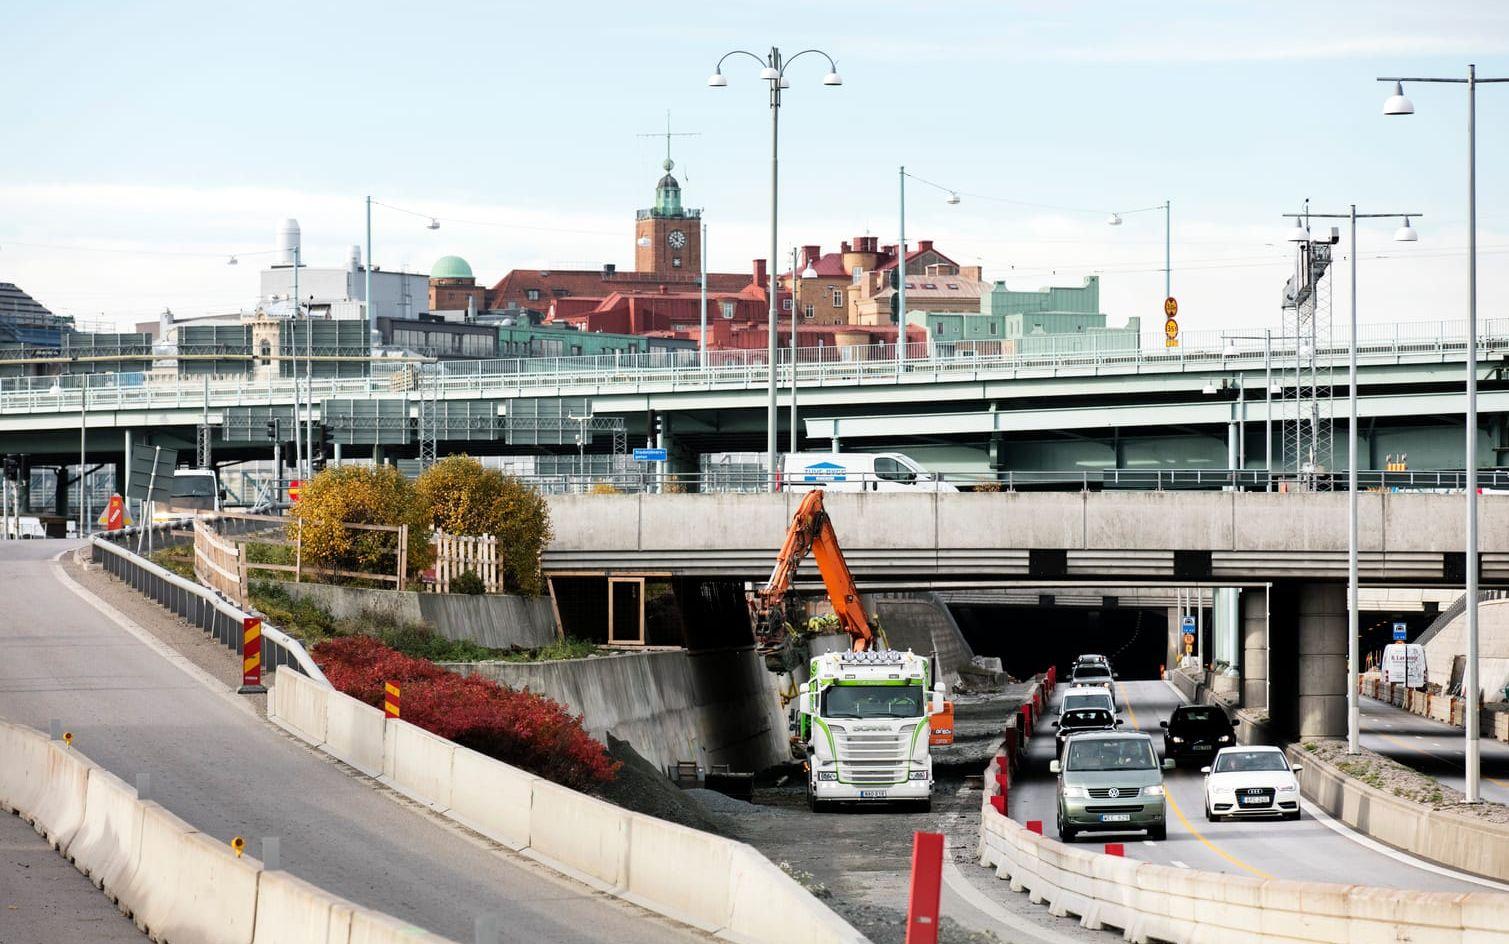 Påfarten sedd från andra hållet, från öster, mot Götatunnelns mynning där arbeten redan pågår inför sänkningen och överdäckningen av motorvägen.